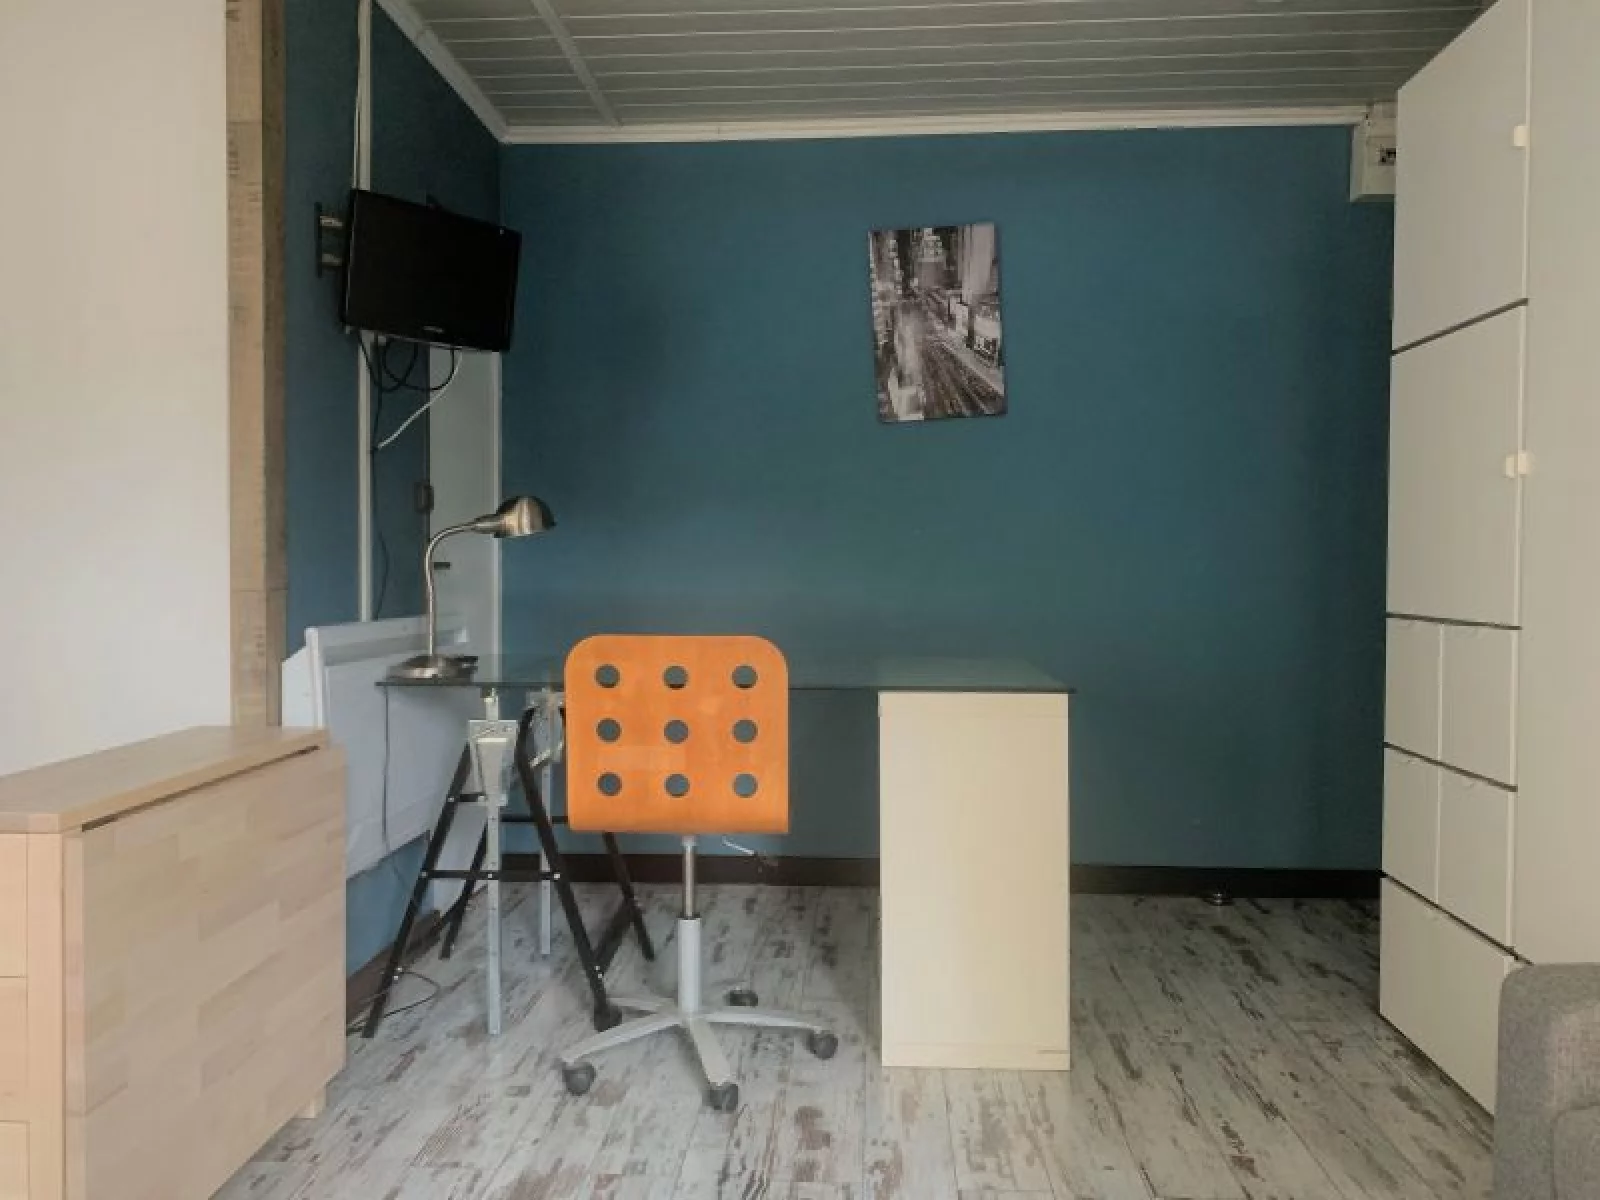 Location studio meublé 20m² (Bordeaux - Victoire)